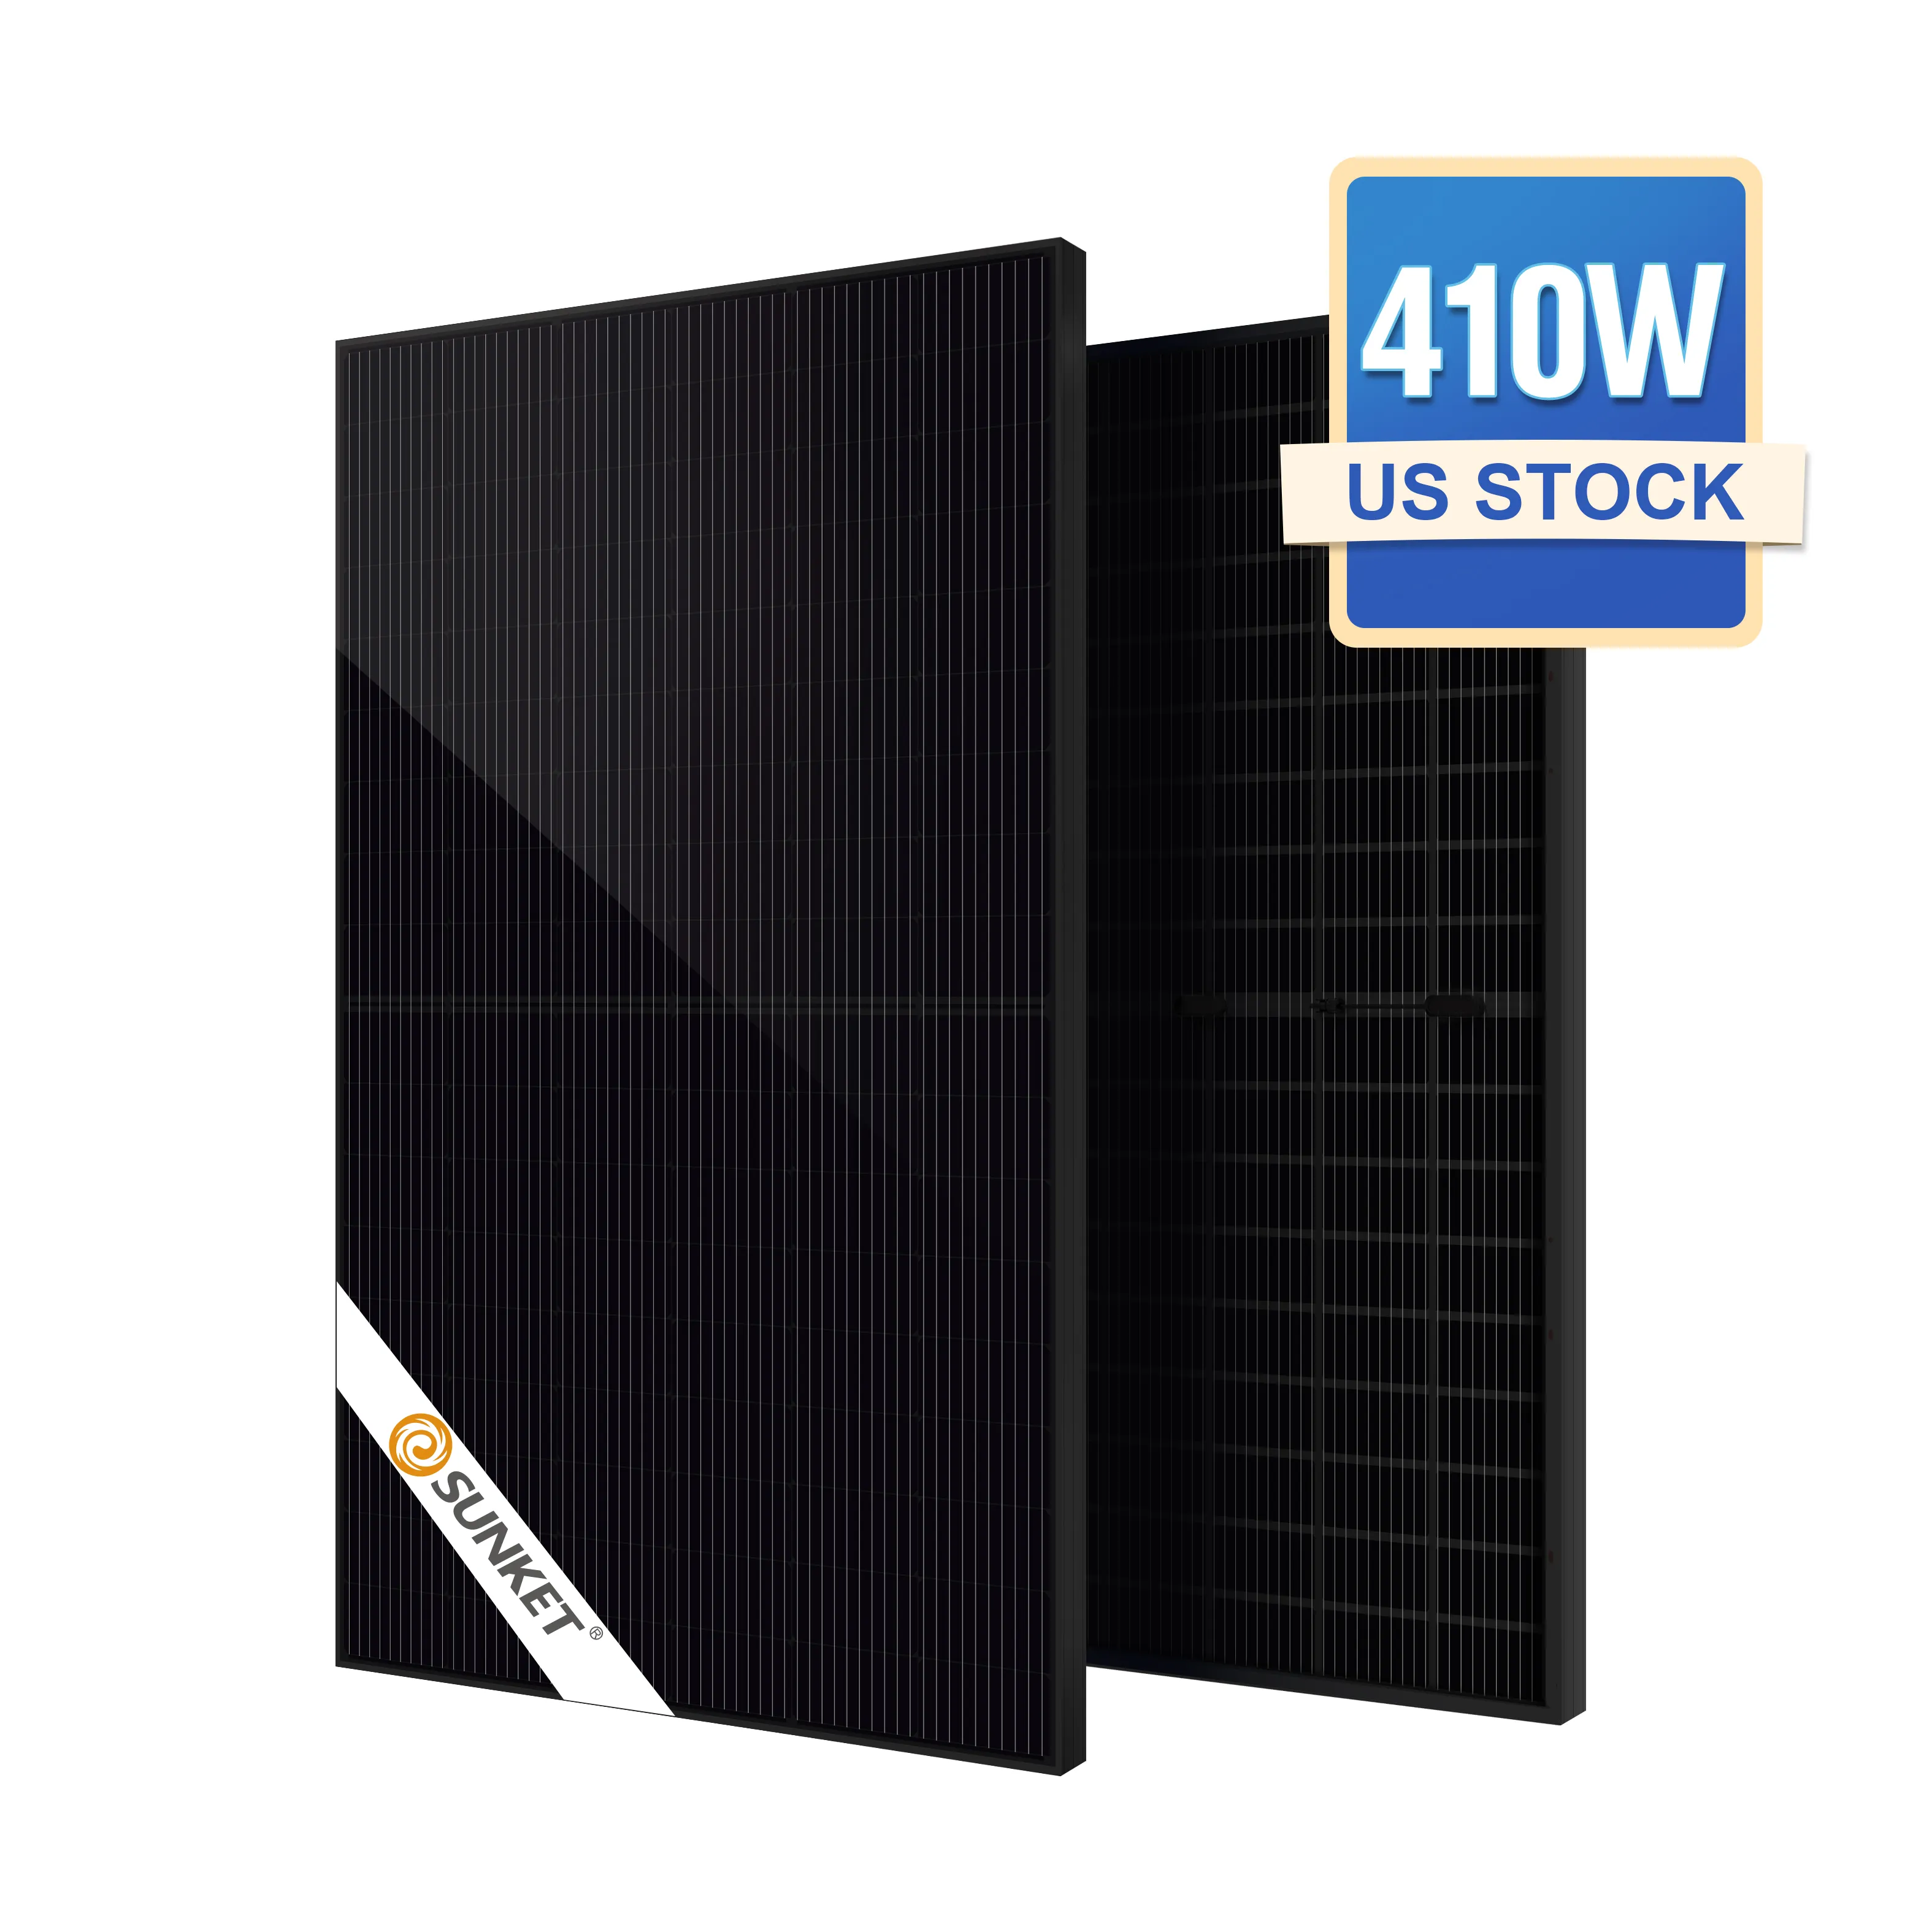 Cara terbaik untuk mengatur baterai Panel tenaga surya biaya penyimpanan tenaga surya 500W harga di dunia untuk rumah